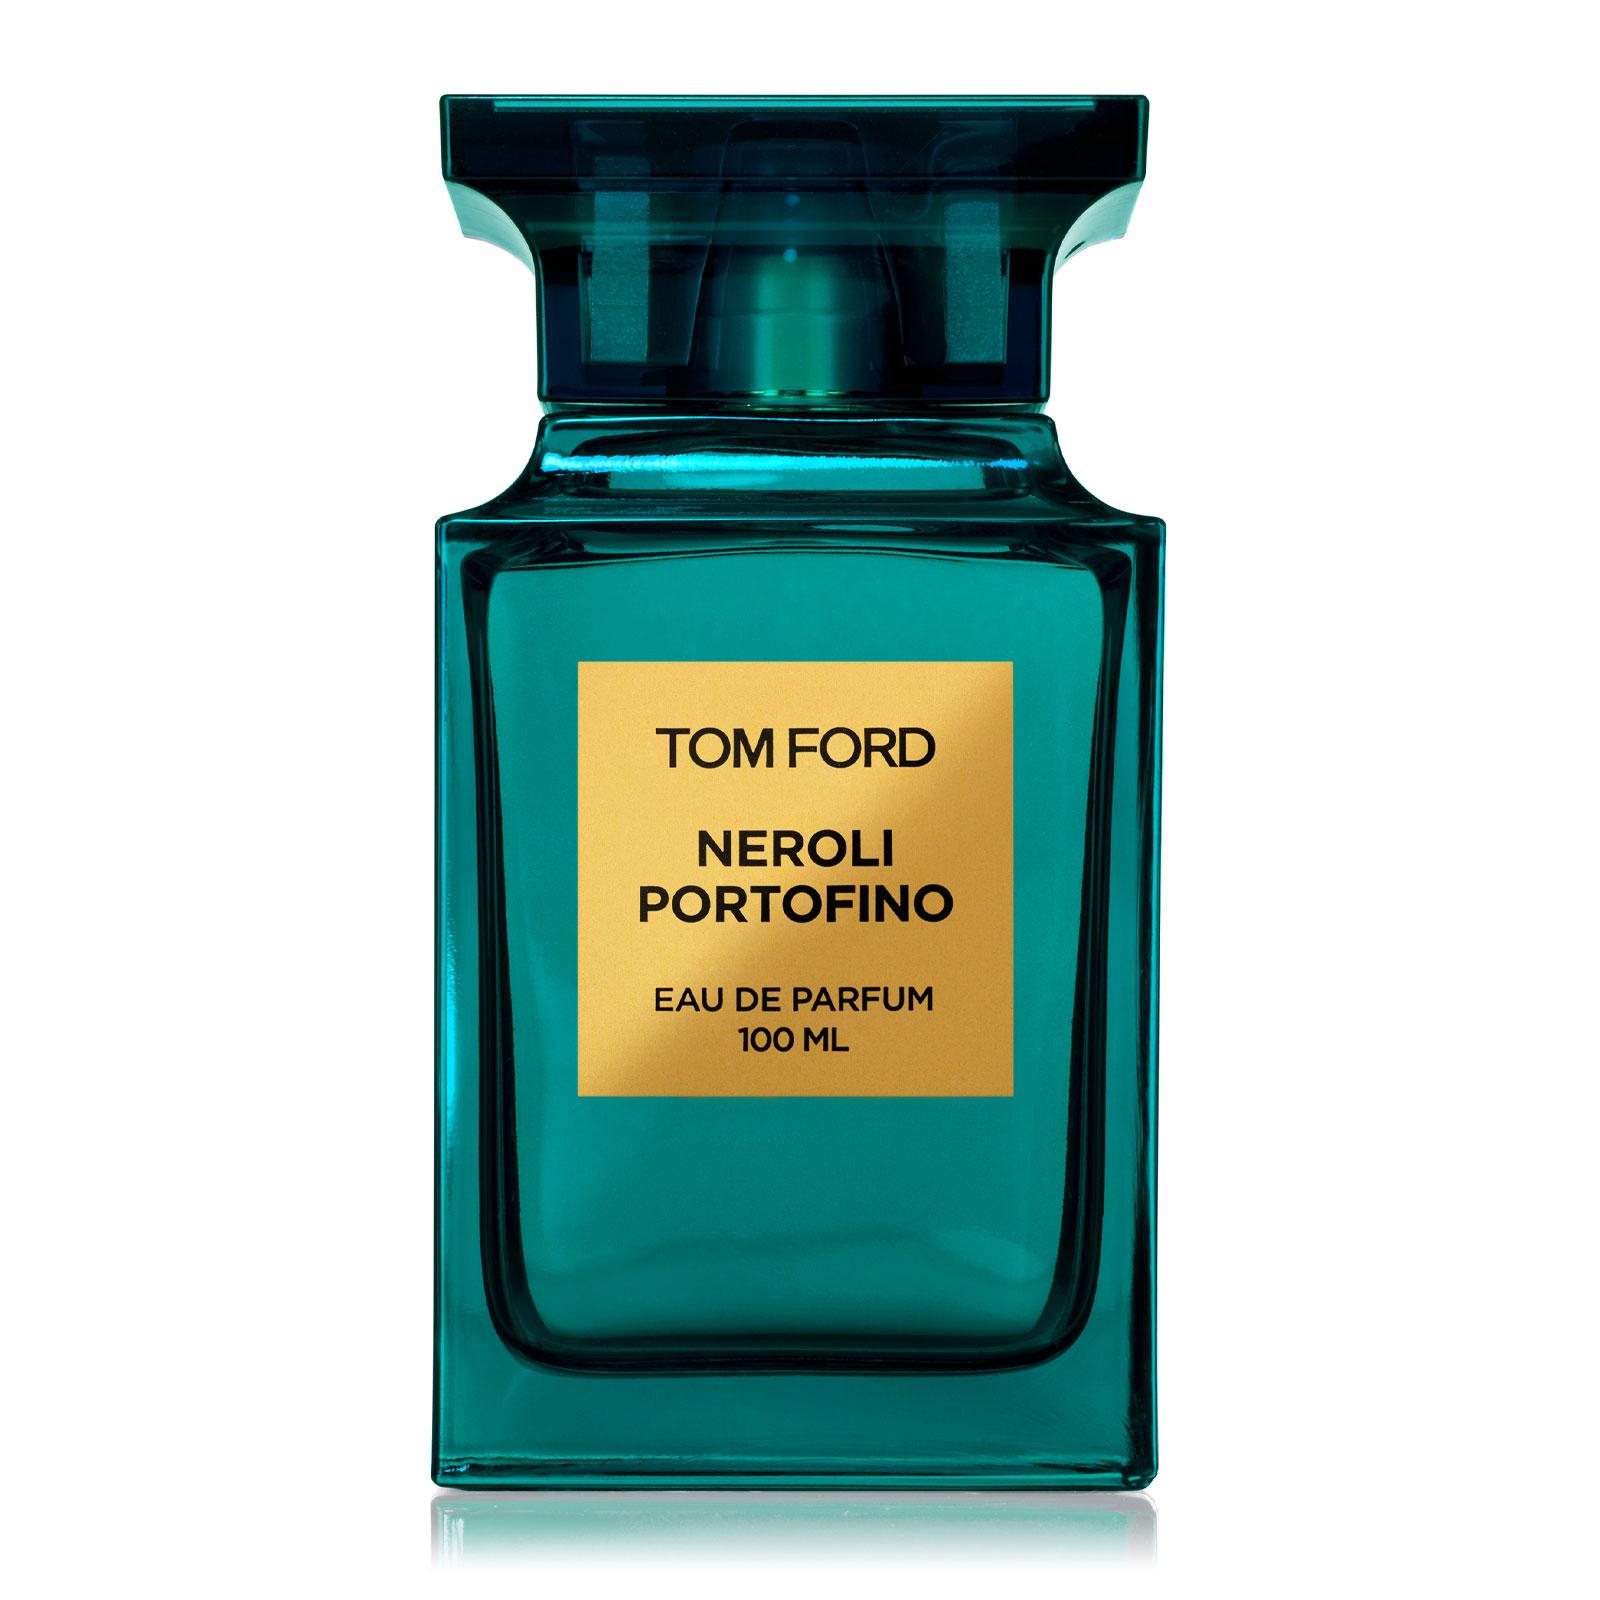 Tom Ford Neroli Portofino Eau de Parfum 100ml | SEPHORA UK